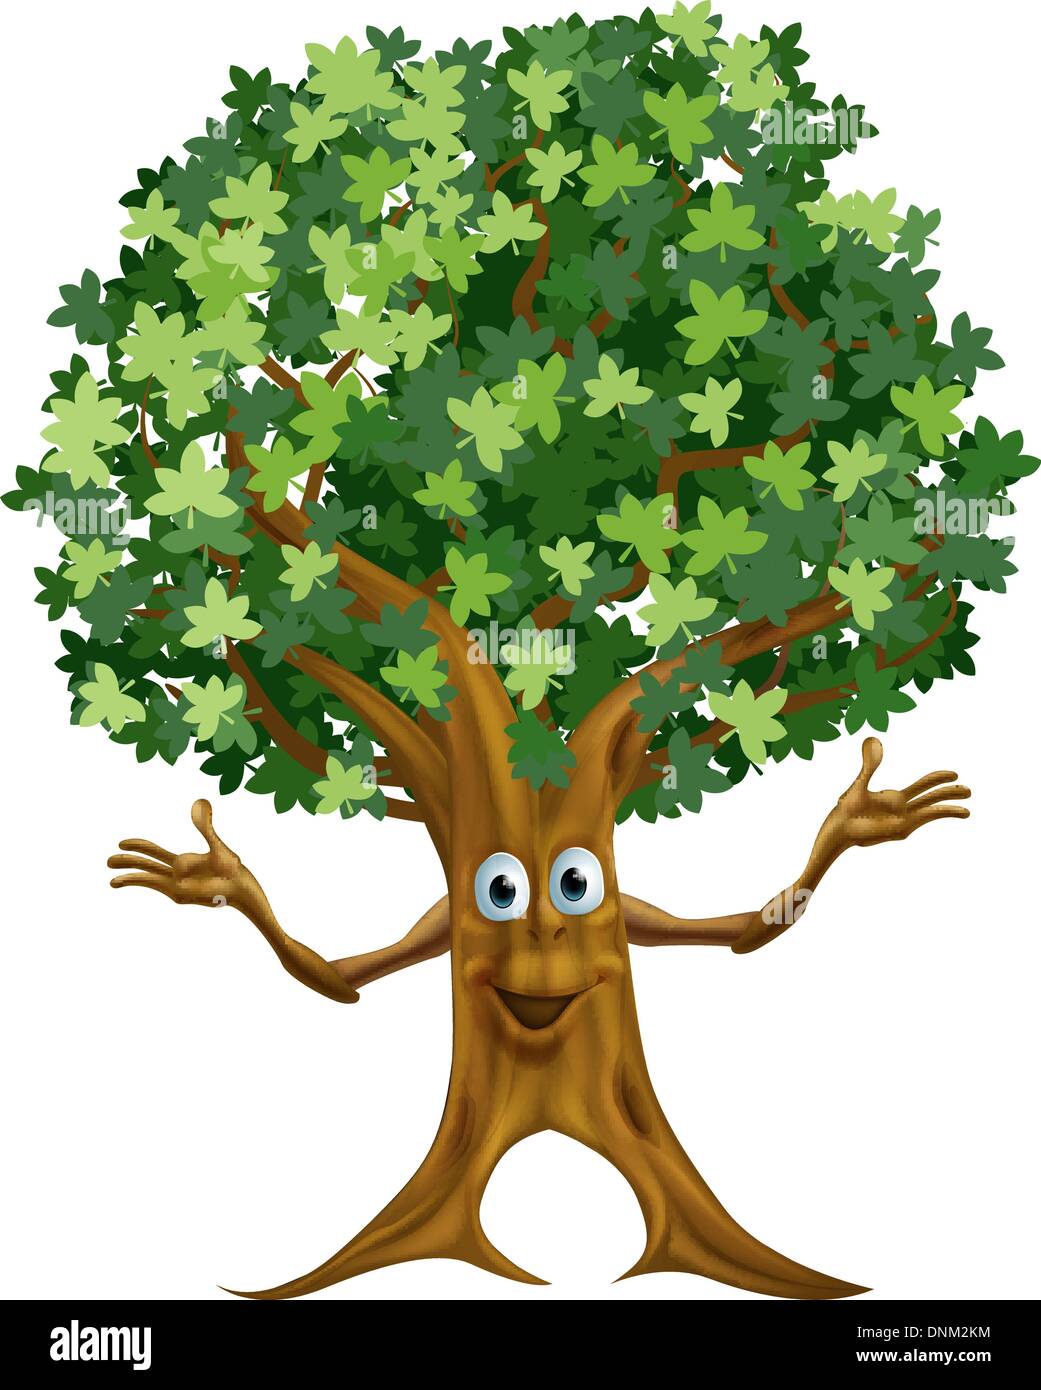 Cartoon tree face